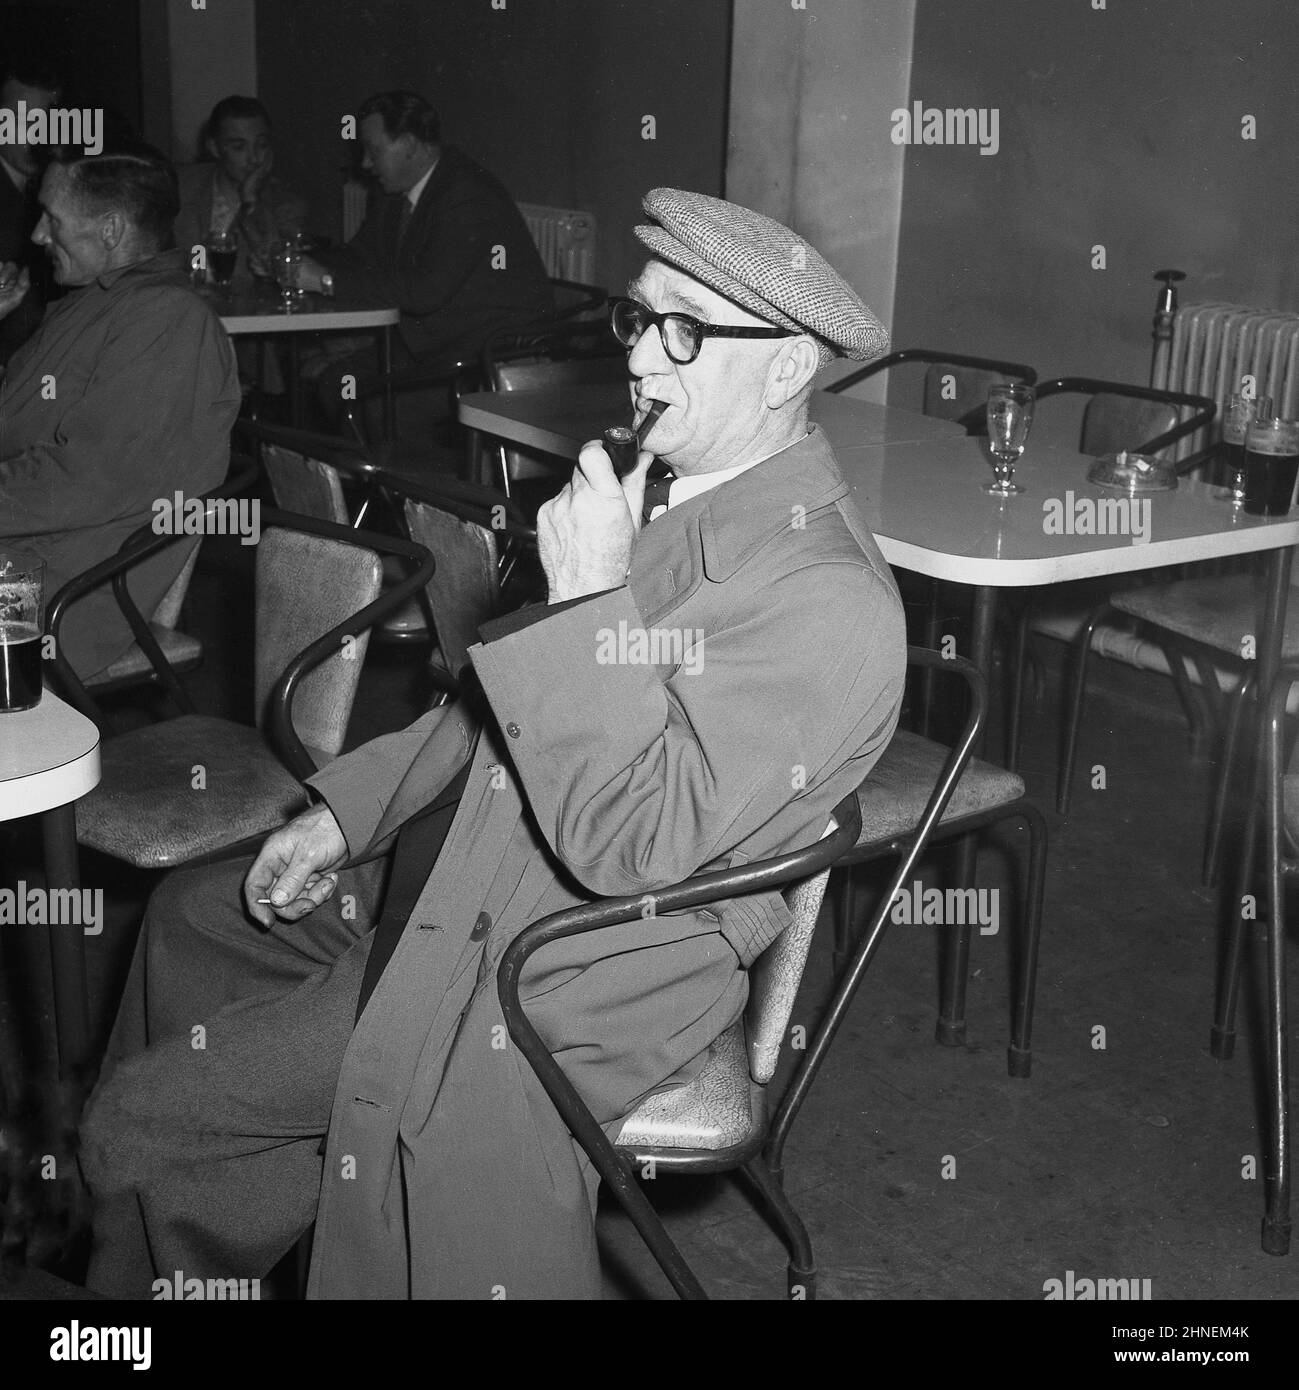 1950s, storico, un uomo di lavoro che indossa giacca e pantaloni, un impermeabile, cappotto e fumare un tubo, seduto a bere una bevanda, una pinta di birra, nel sociale società dopo il lavoro, Port Talbot, Galles, Regno Unito. Foto Stock